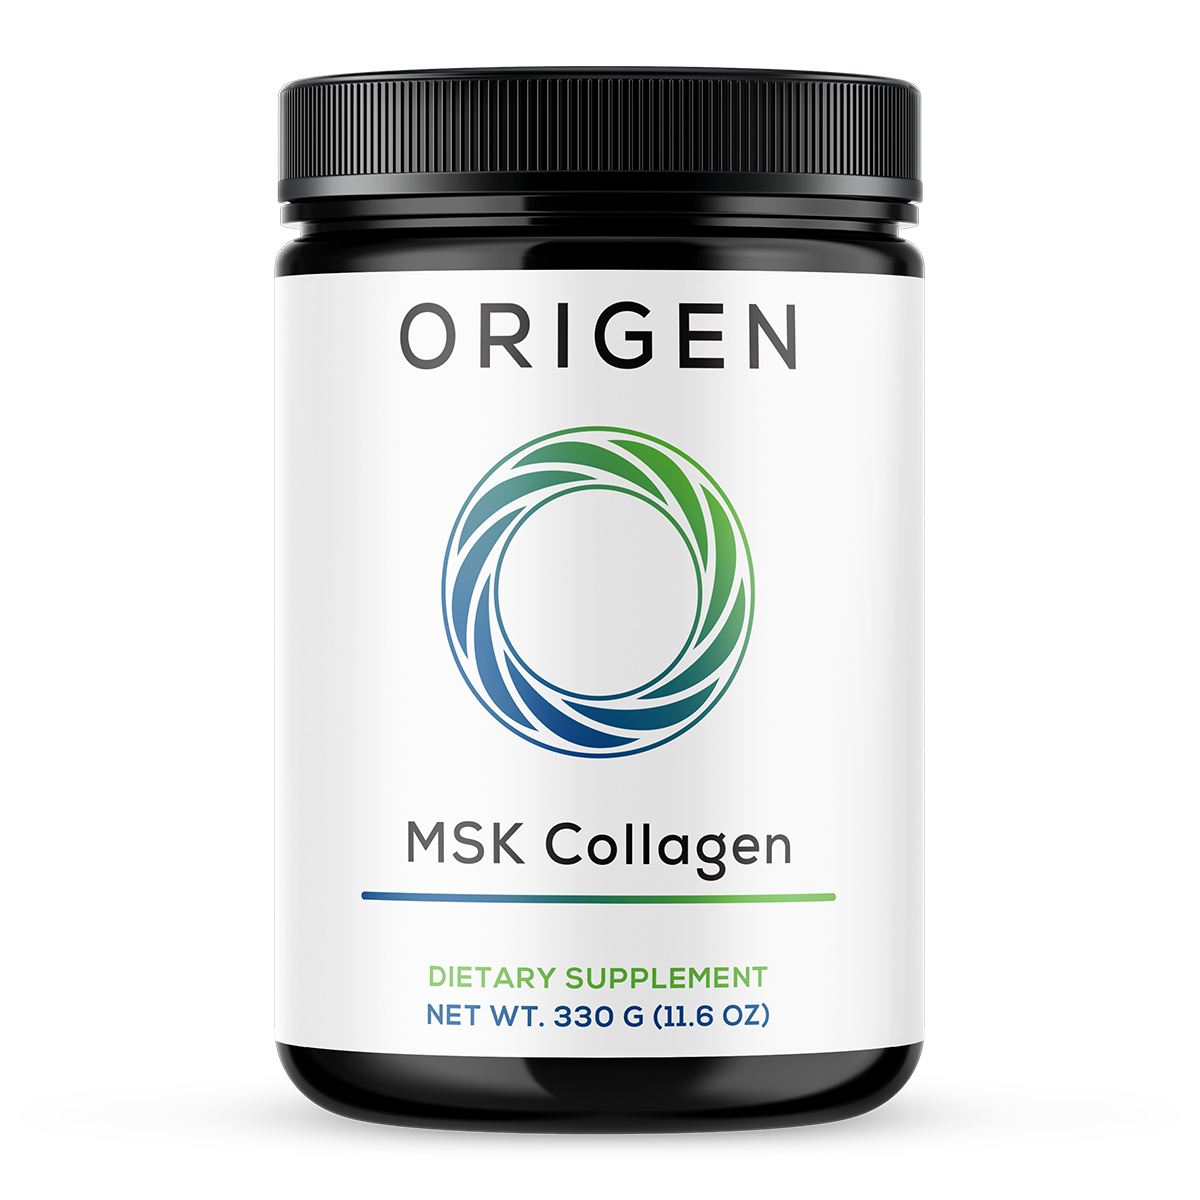 MSK Collagen